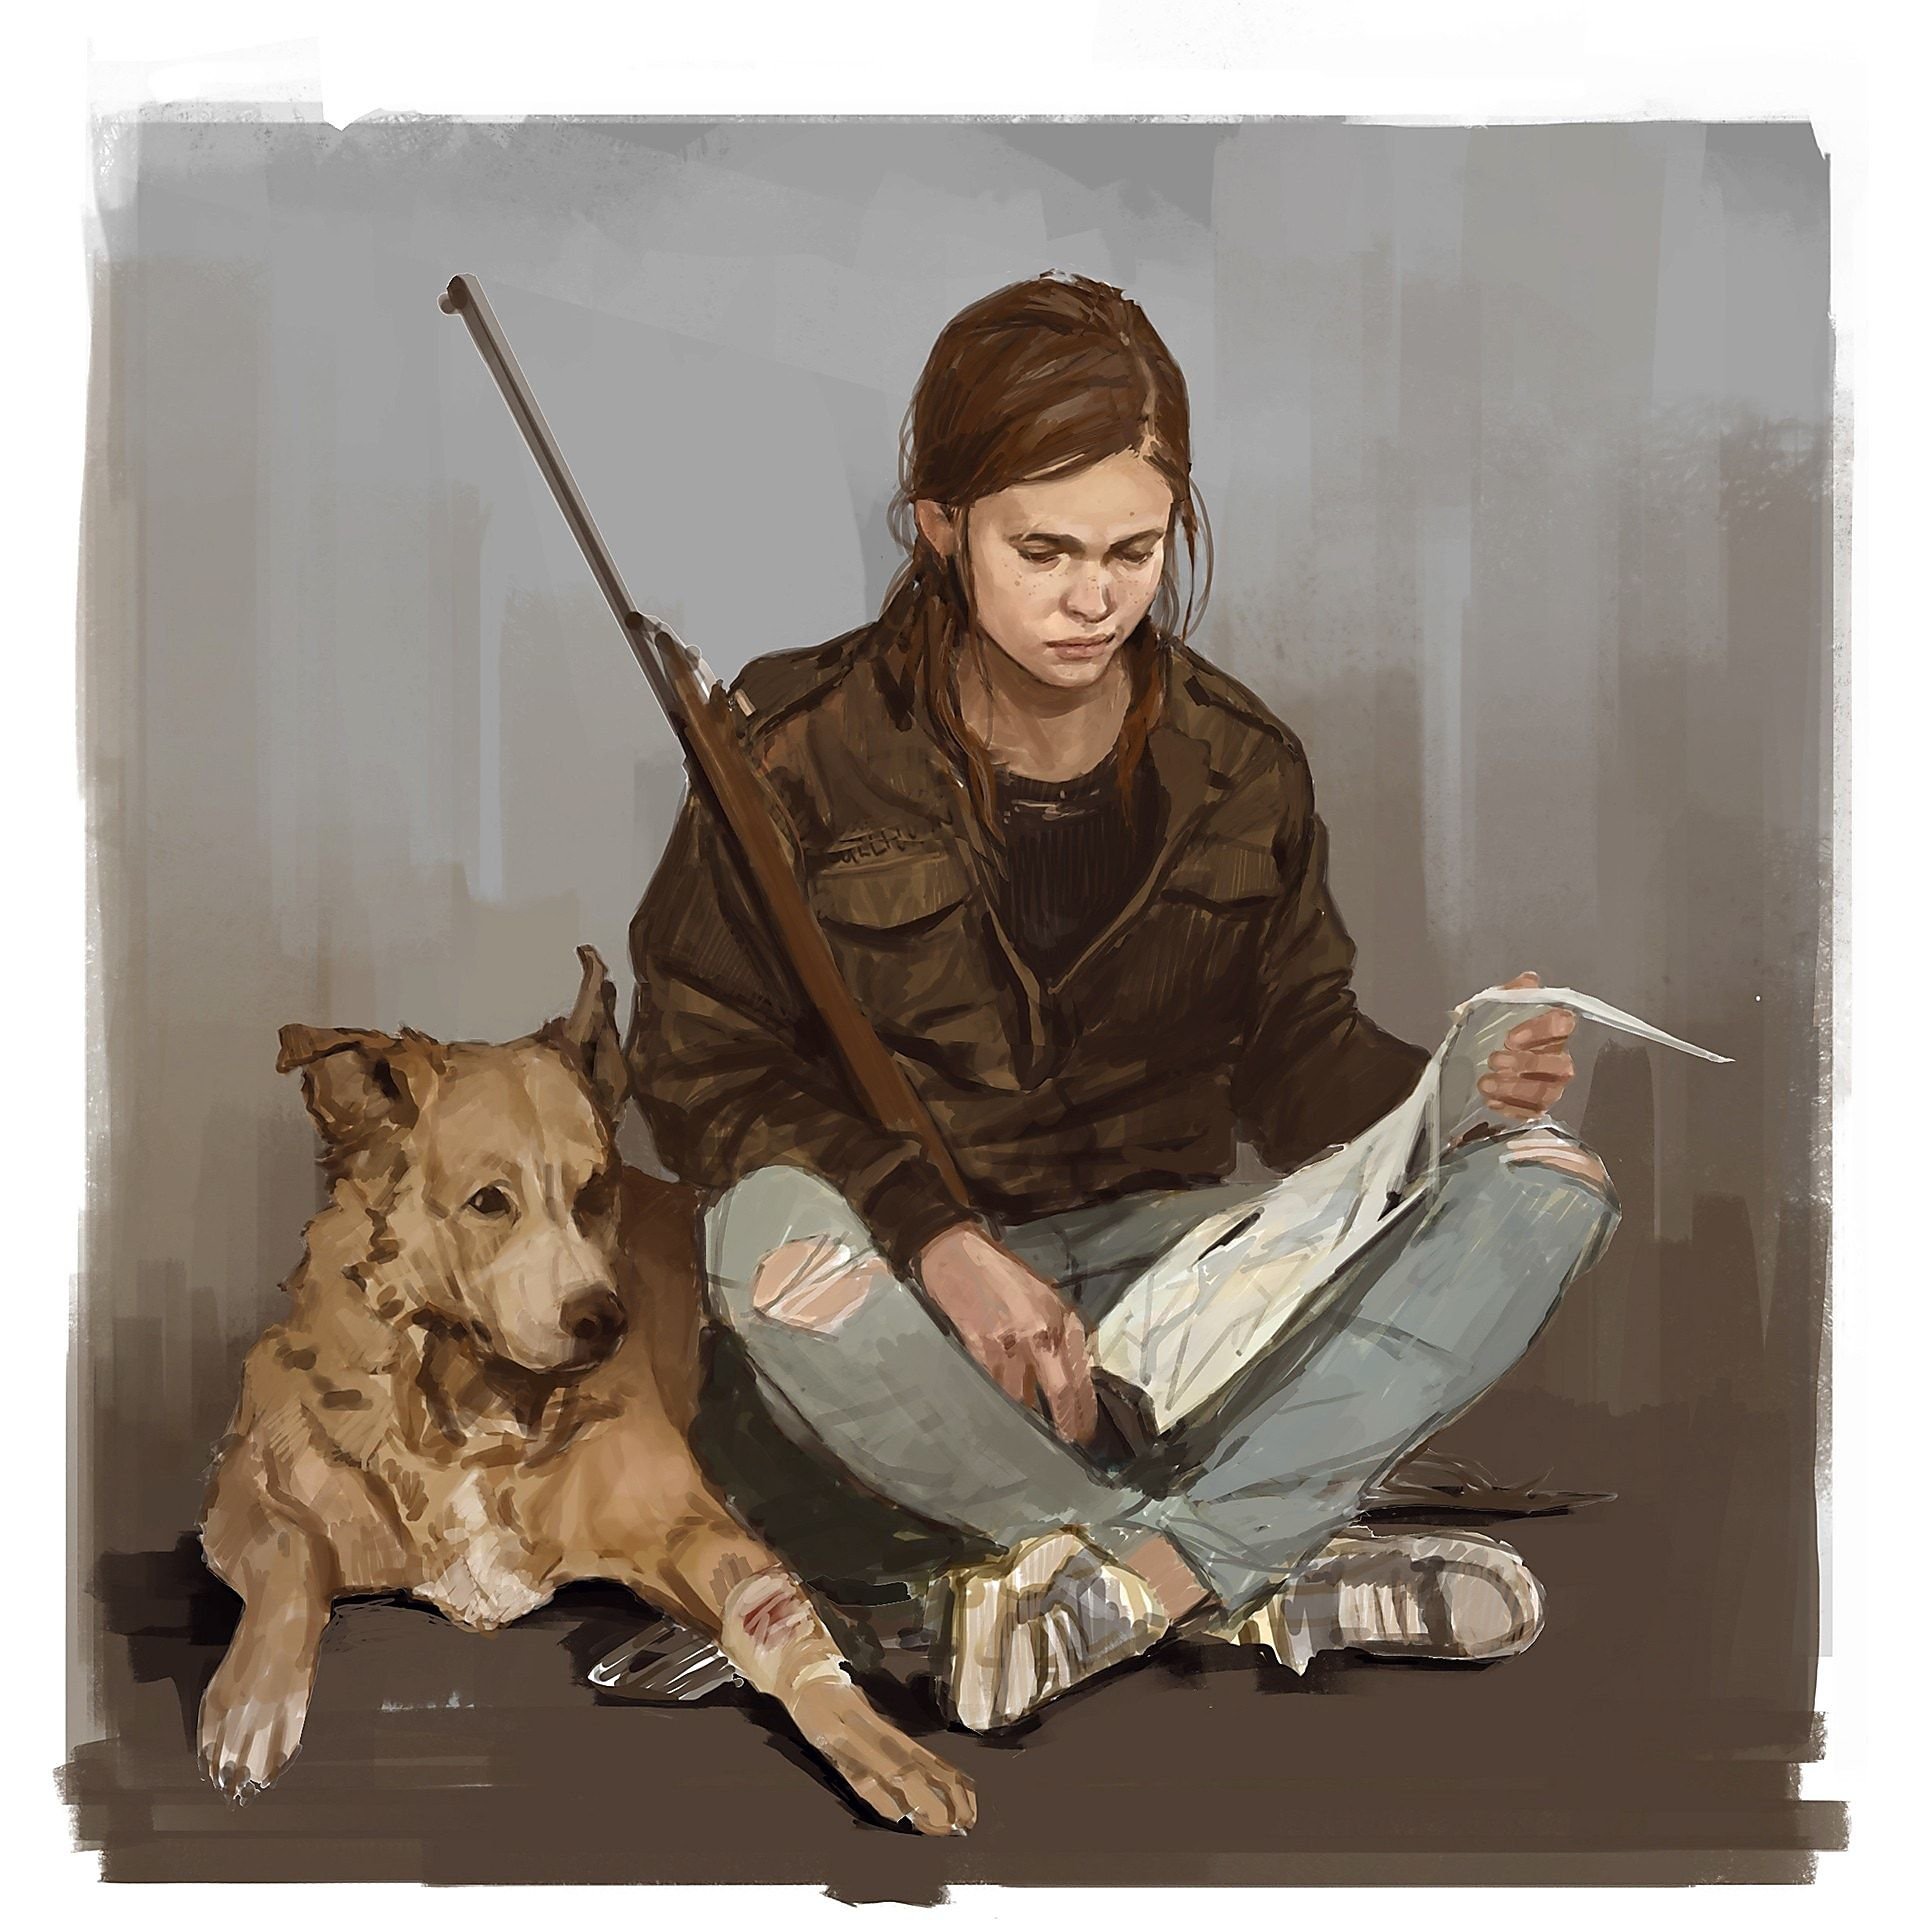 The Last of Us Part II  Ellie era protagonista desde o início